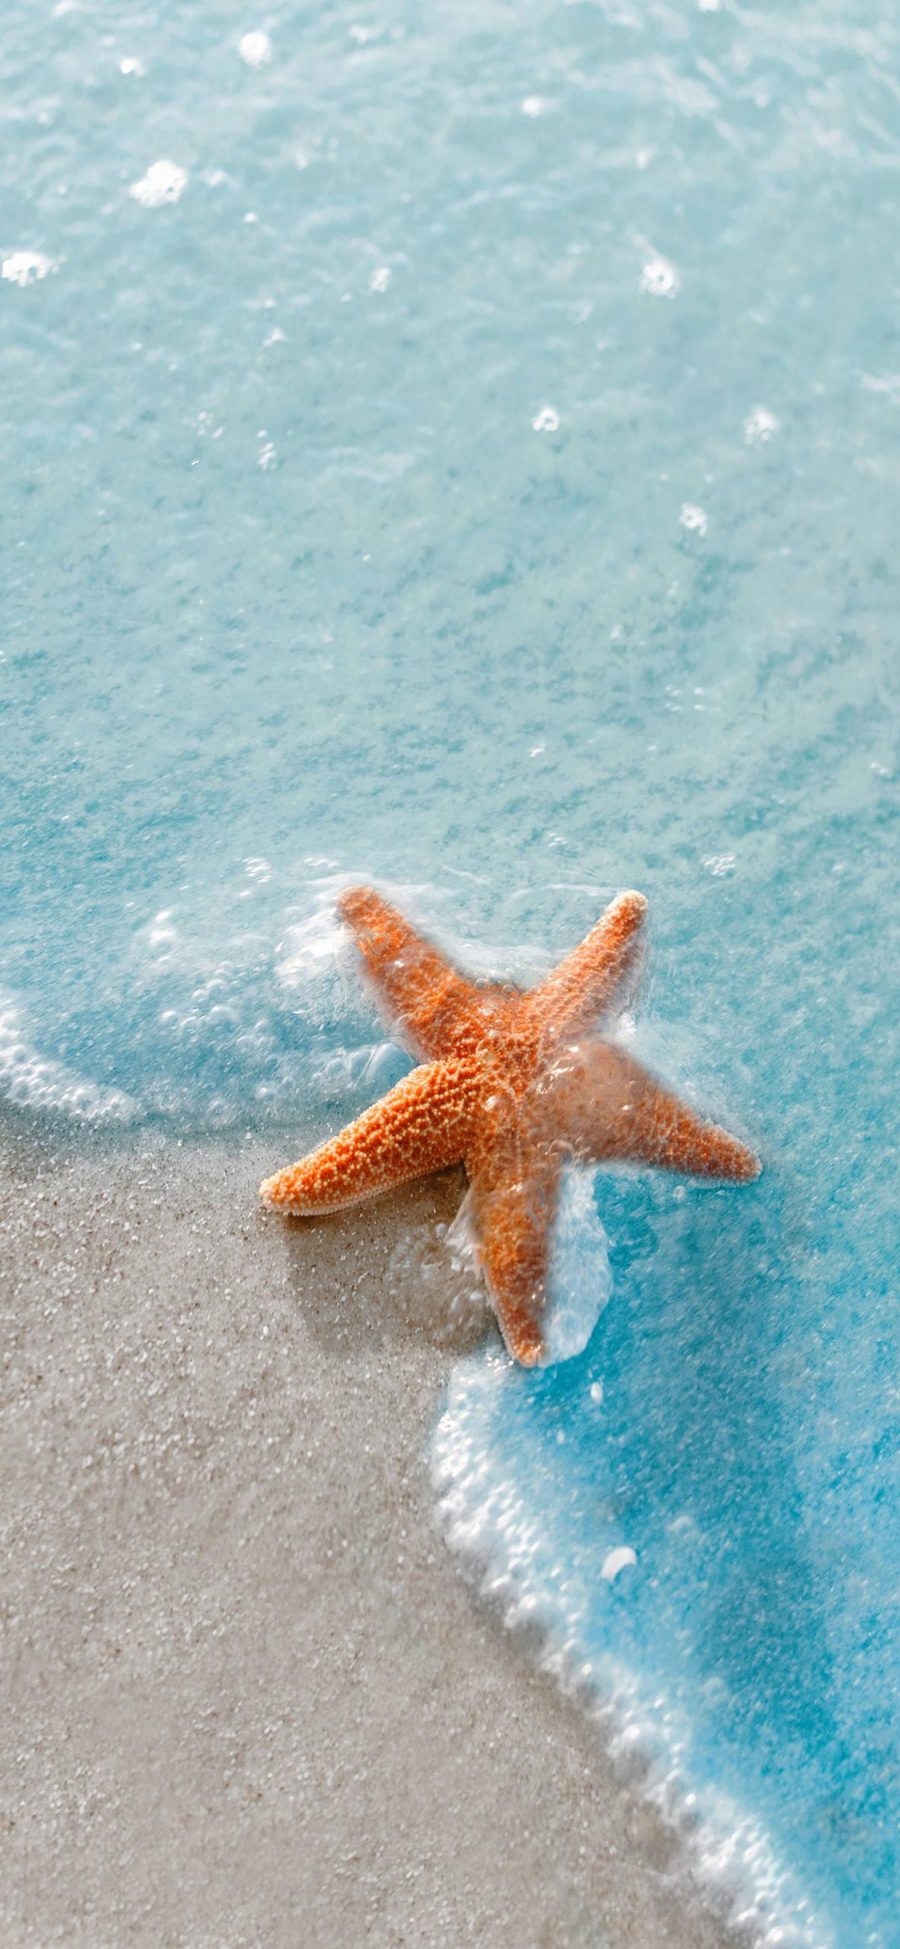 [2436×1125]海星 海洋生物 大海 海浪 沙滩 苹果手机壁纸图片